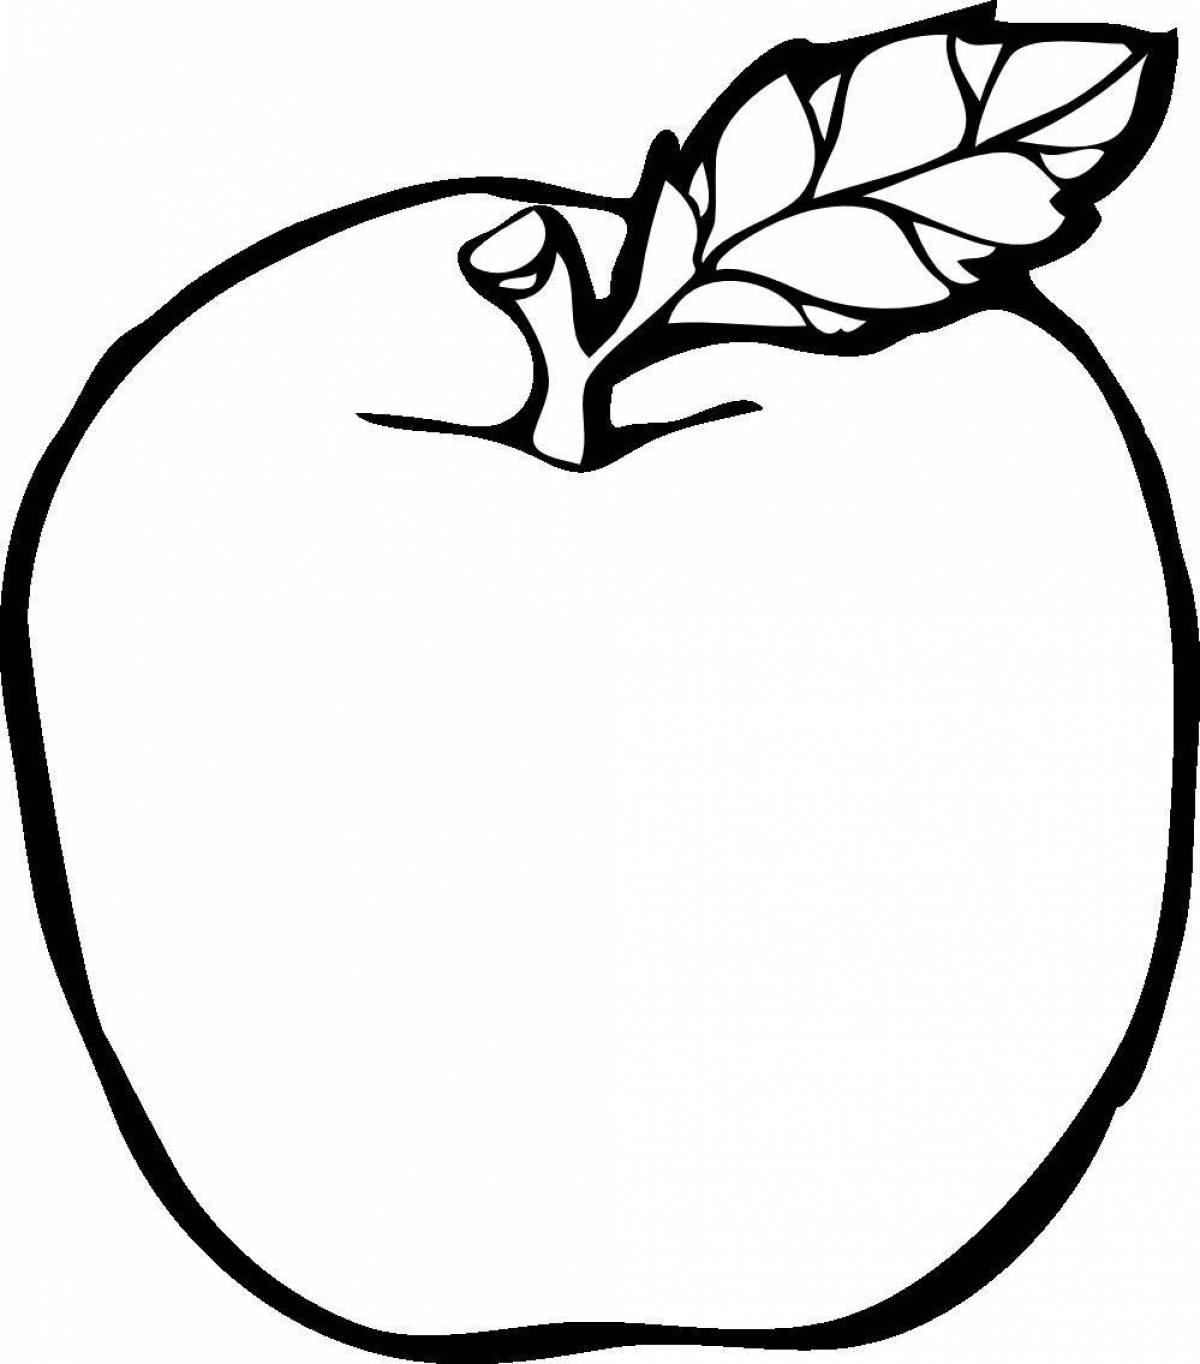 Детальный рисунок яблока